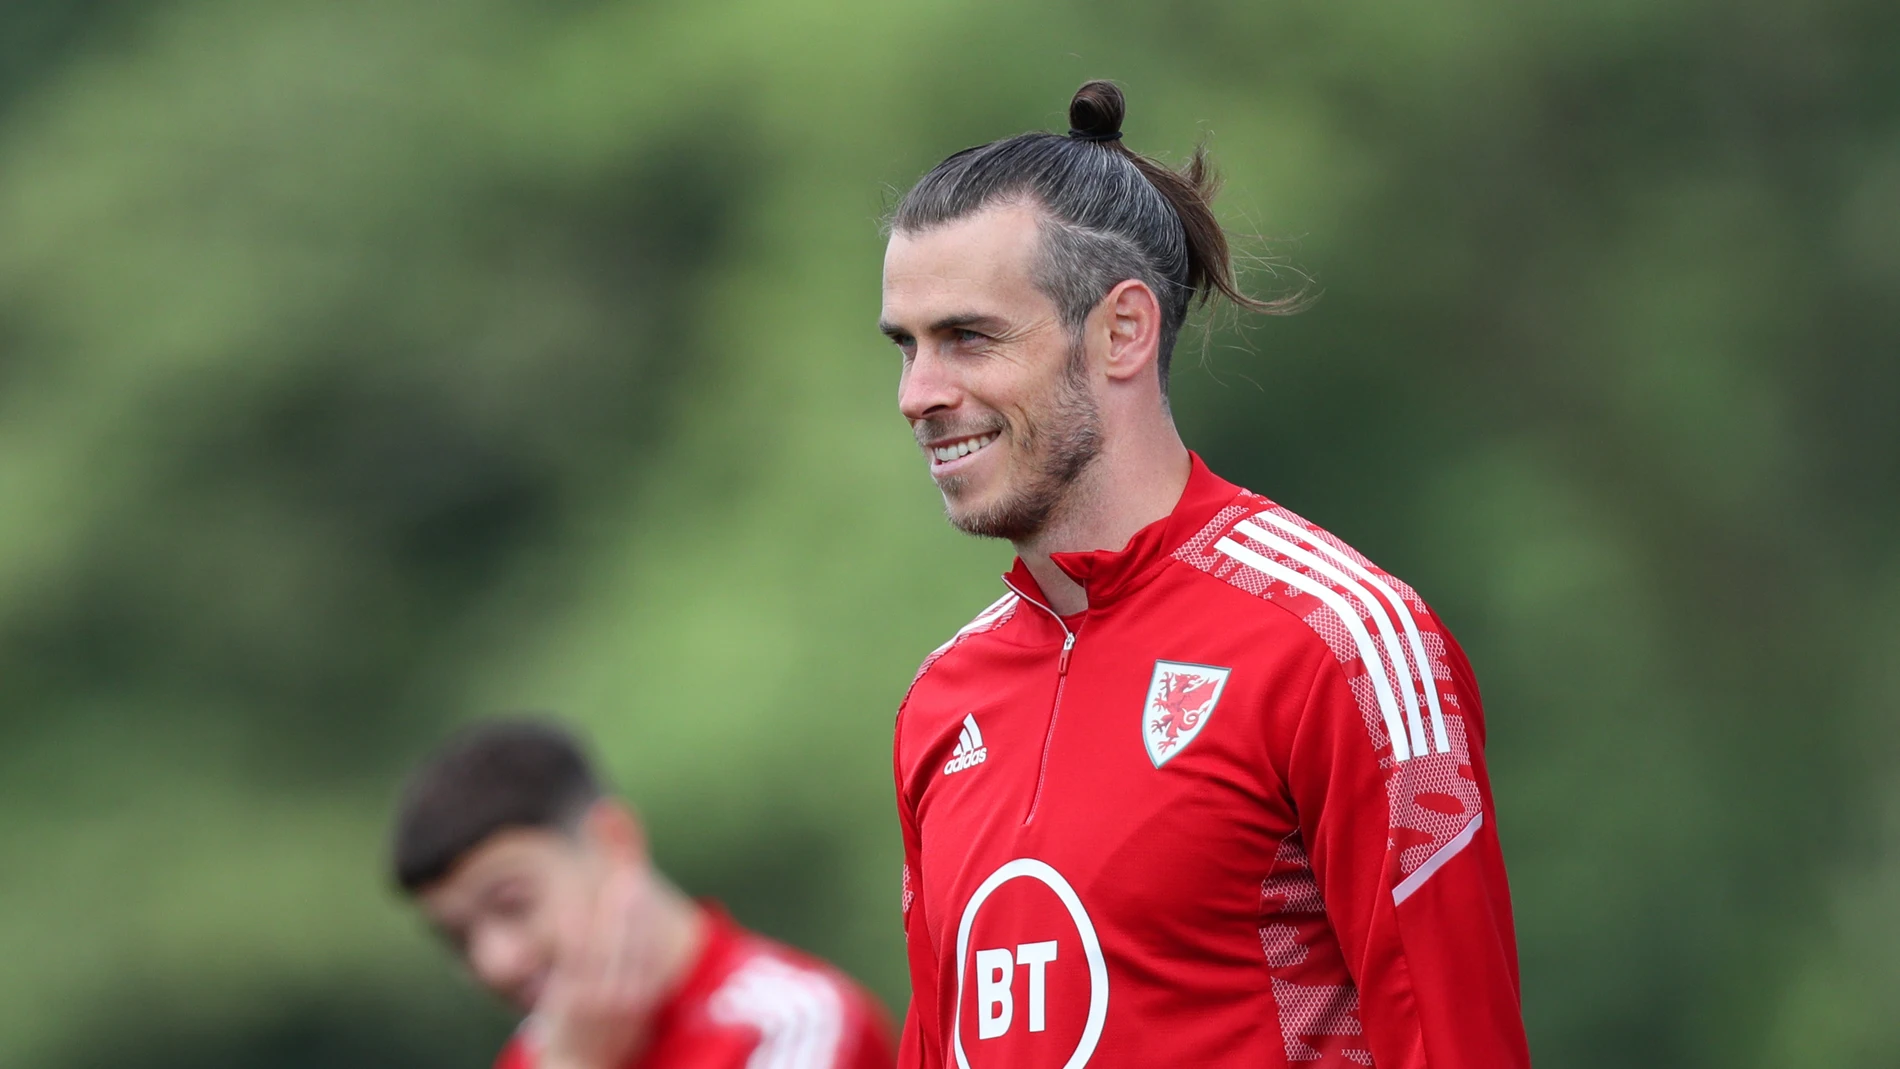 OFICIAL: Gareth Bale ficha por Los Angeles FC